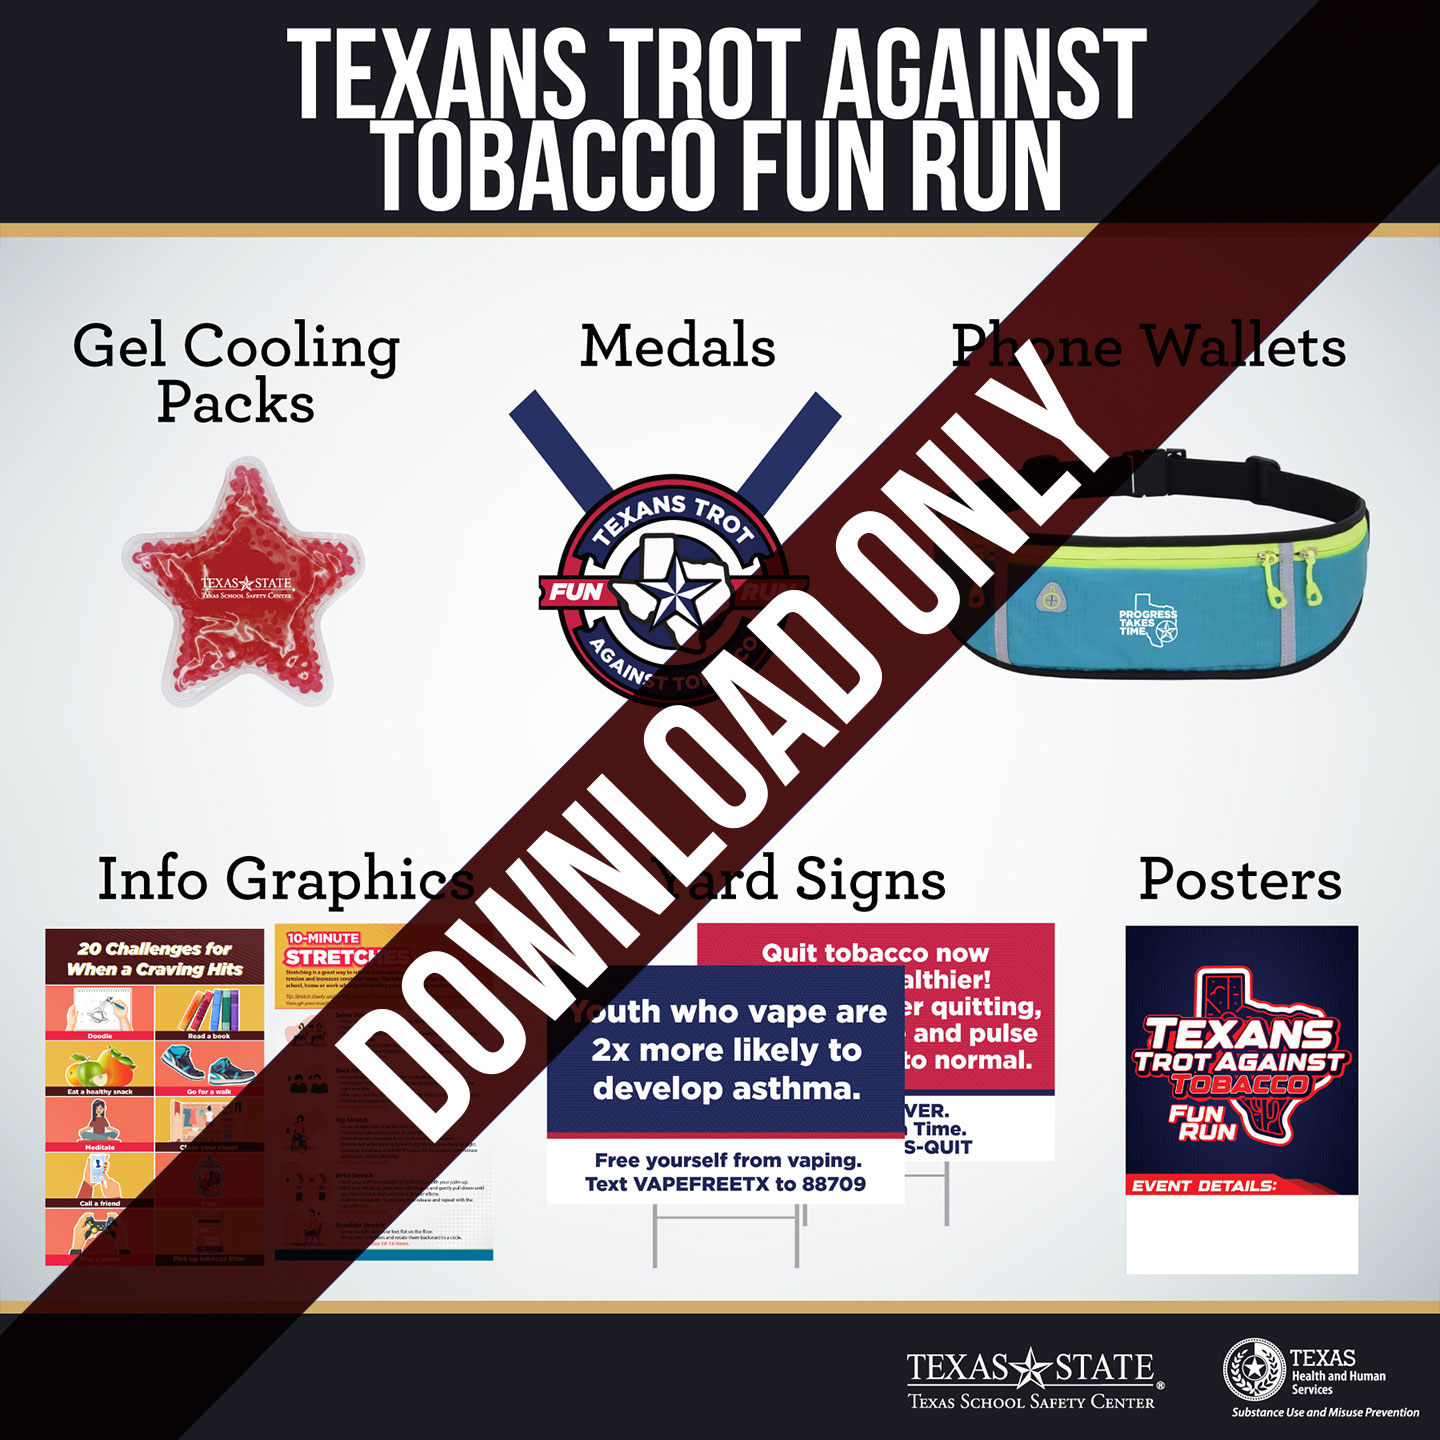 Texans Trot Against Tobacco Fun Run Kit